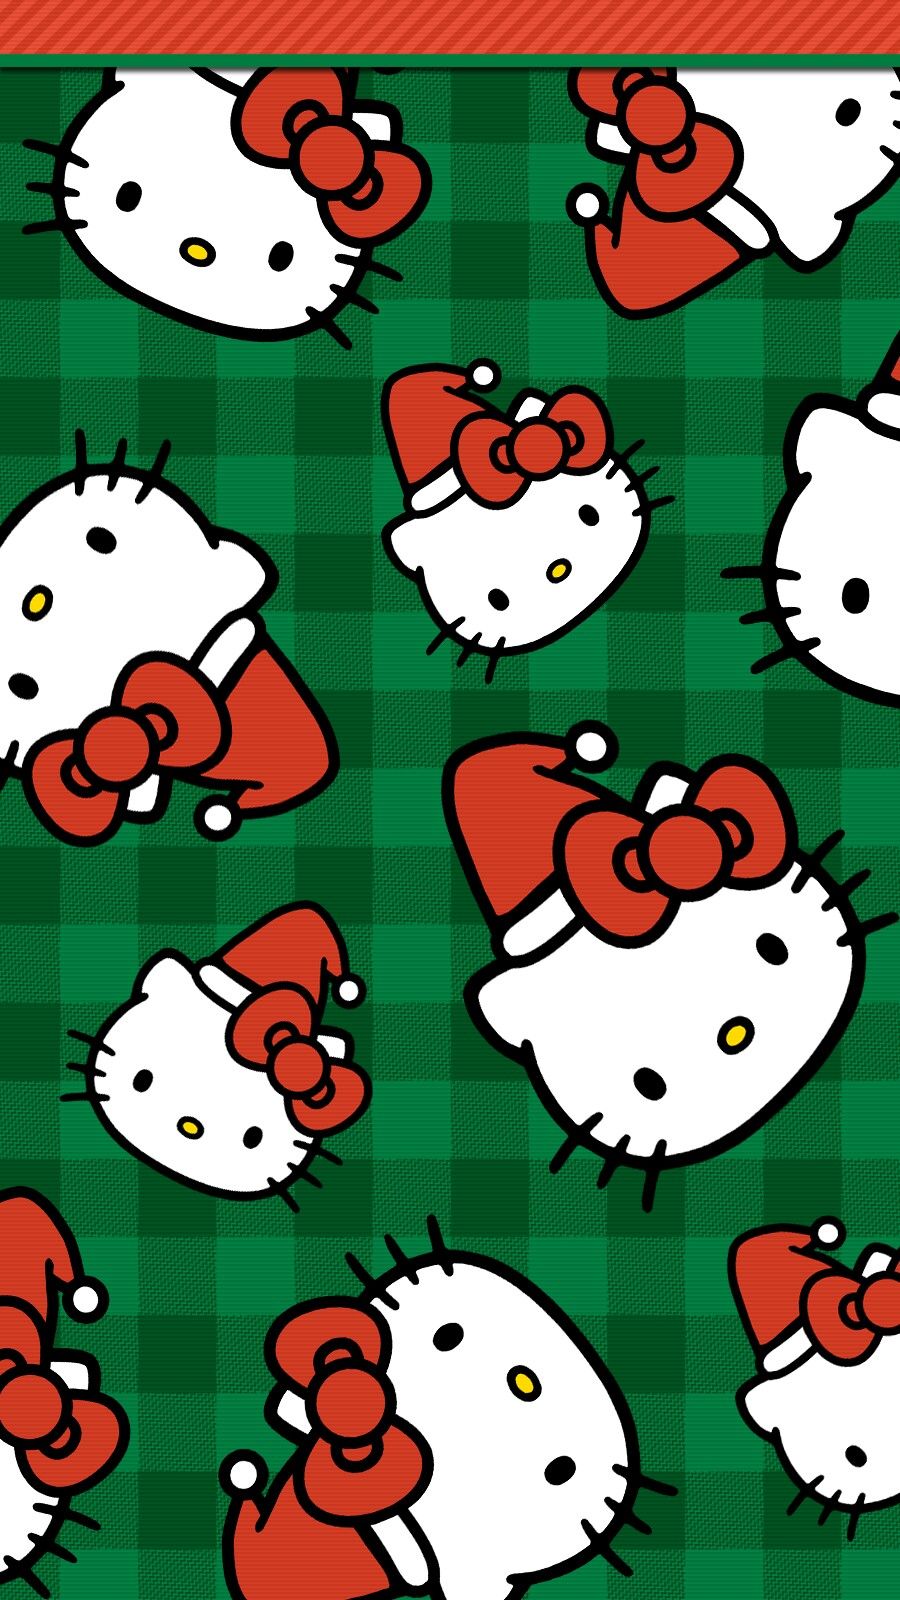 Christmas Hello Kitty Wallpapers